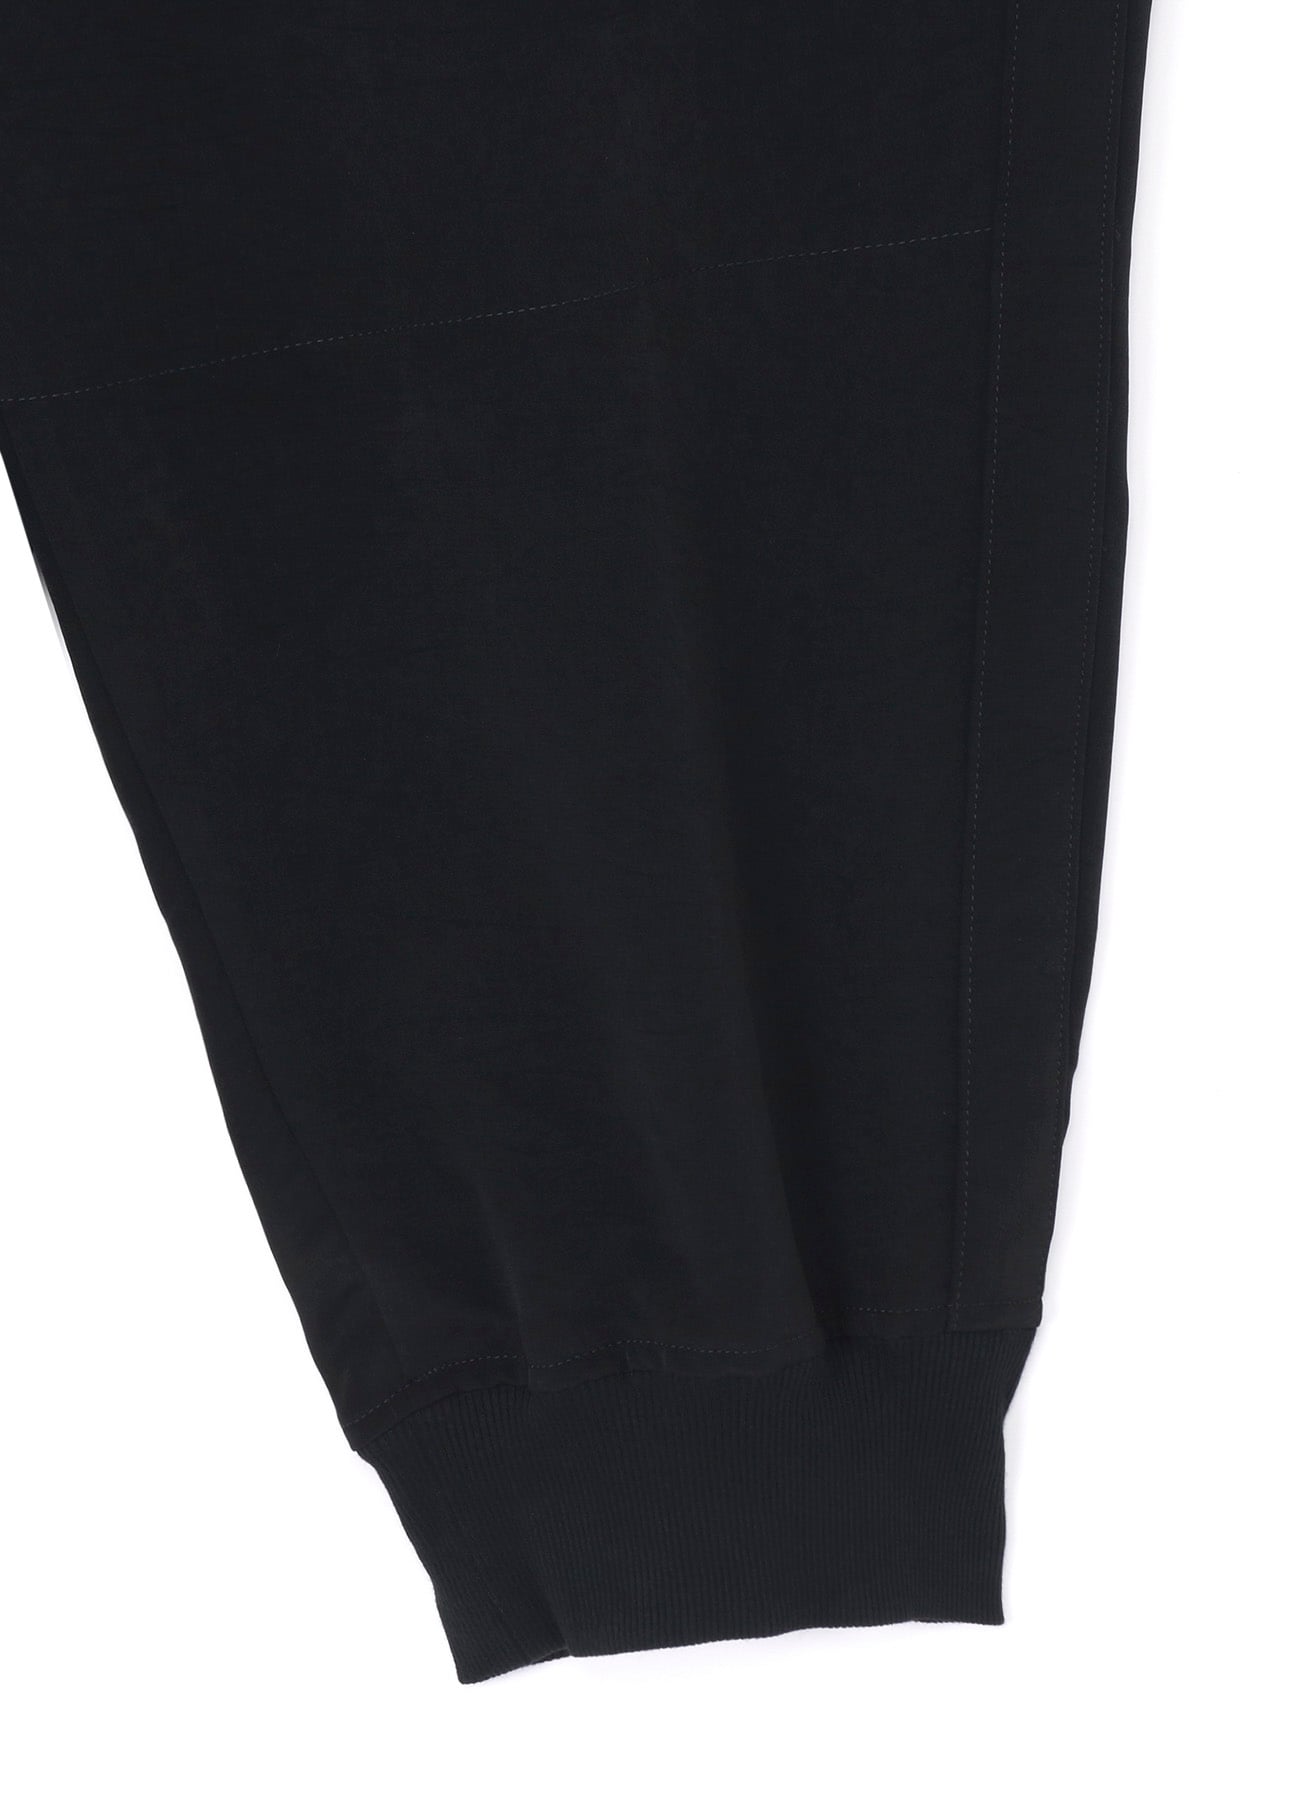 安価 Y's ブラック 黒 サテン 巻き 変形パンツ パンツ 